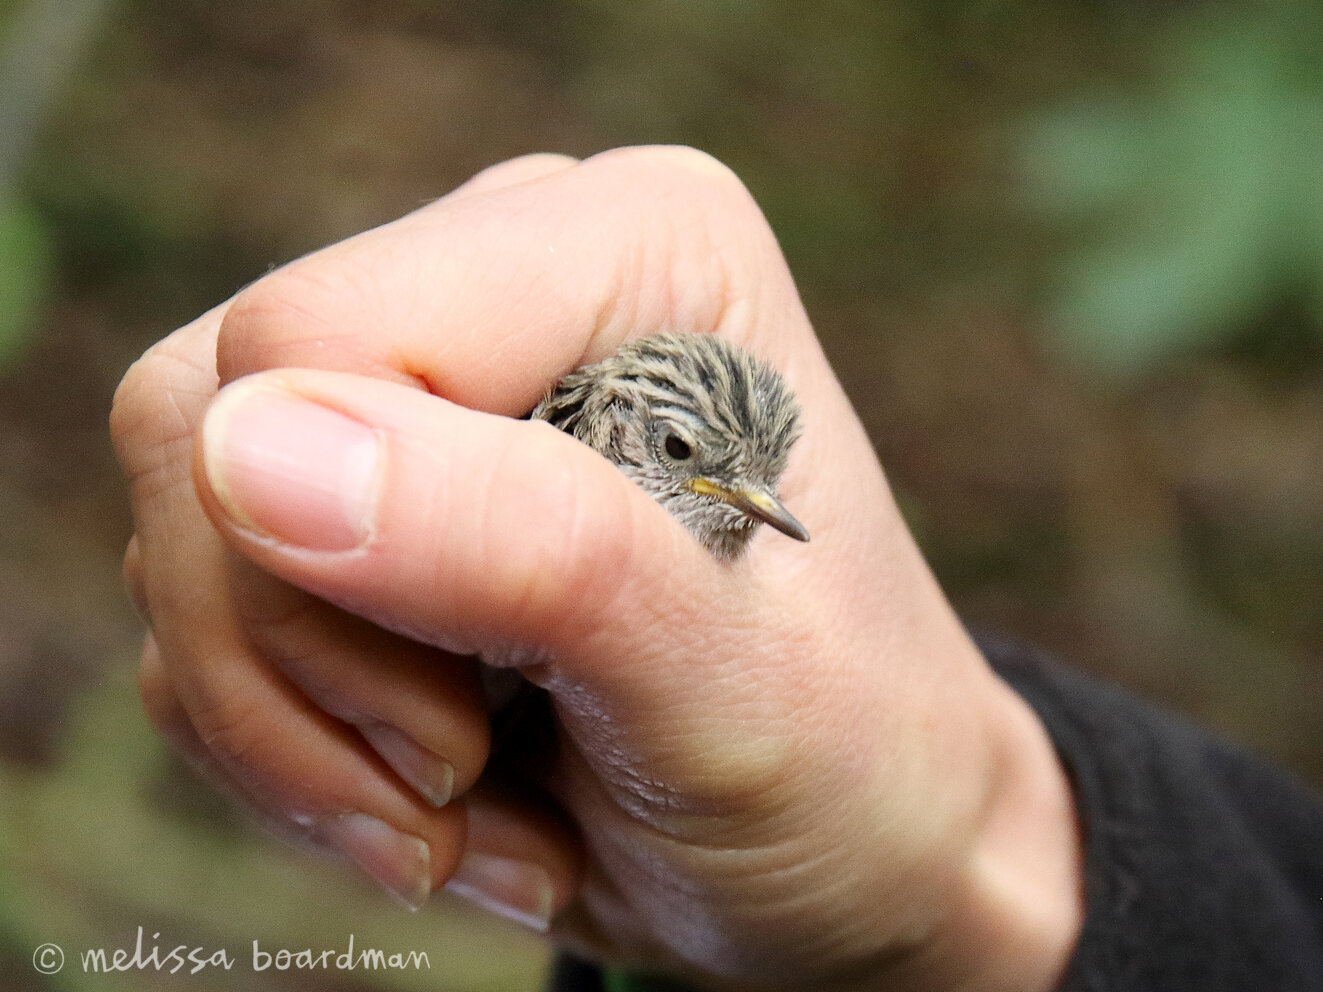 tītipounamu rifleman chick at Zealandia Ecosanctuary